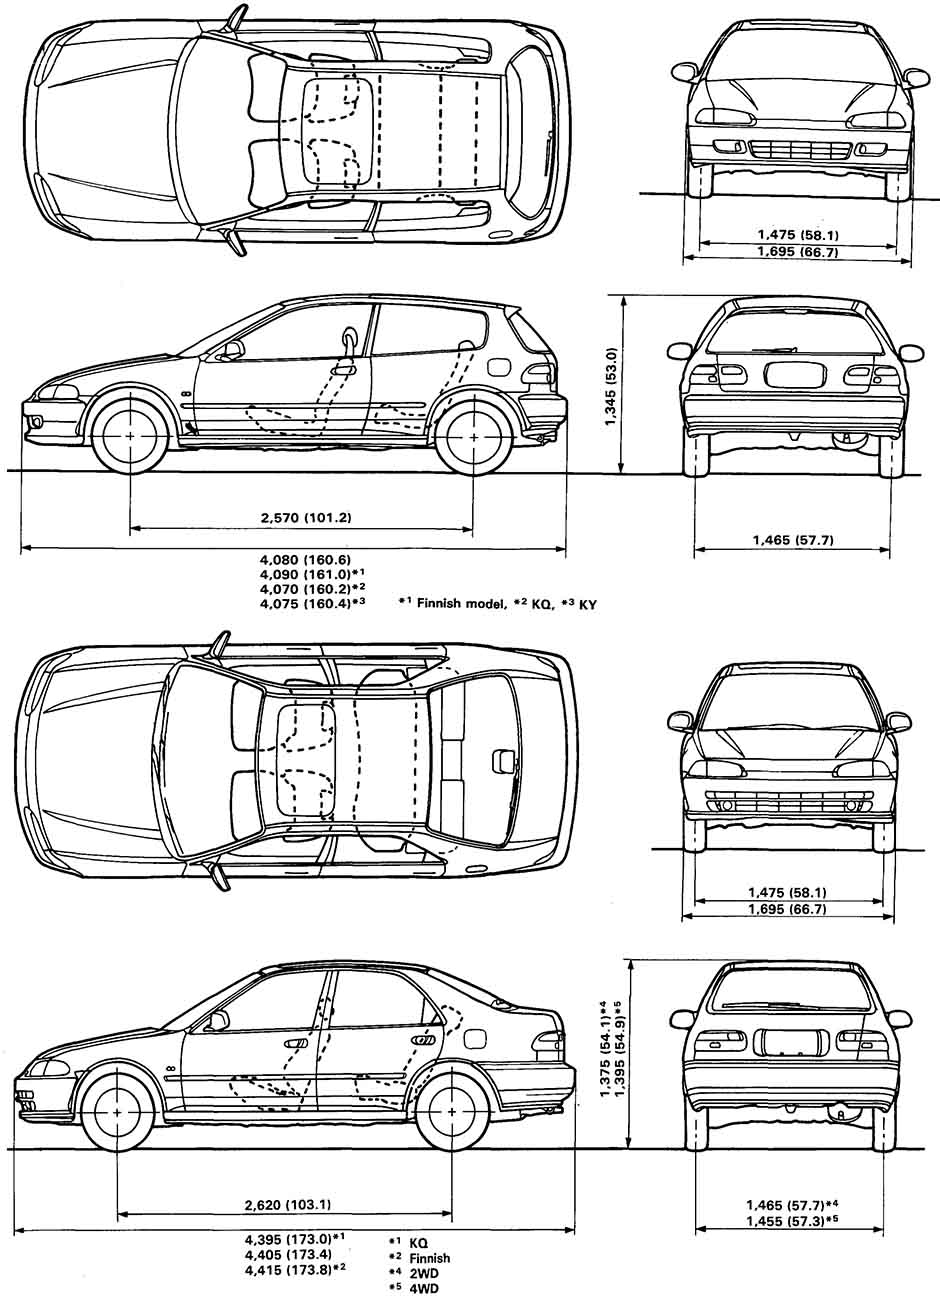 Габаритные размеры Хонда Сивик 1991-1995 (dimensions Honda Civic)